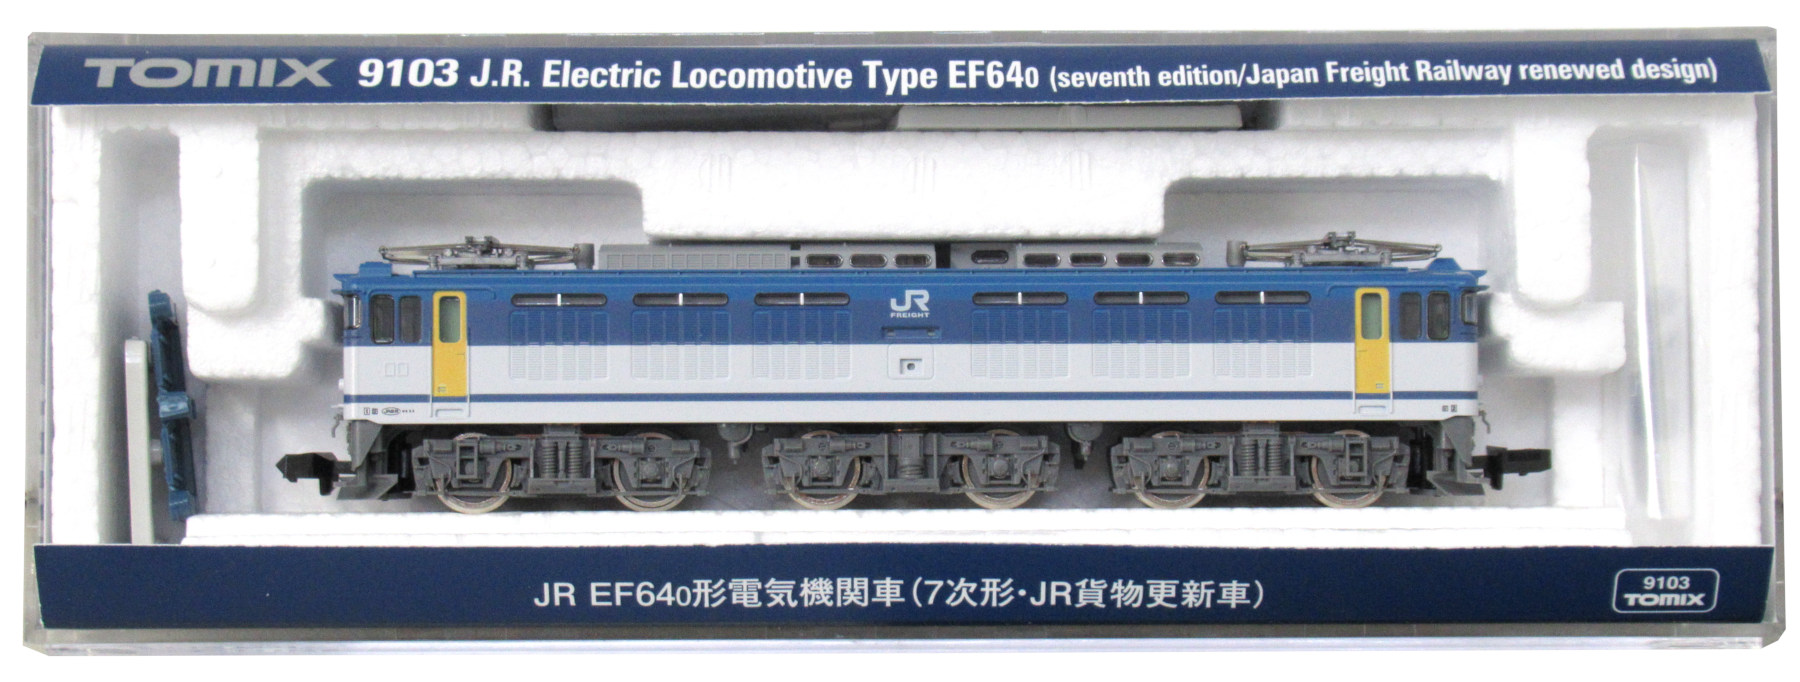 Ｎゲージ ☆ EF64-0 JR貨物塗装(広島 EF64-57・67)イメージ 常点灯仕様 